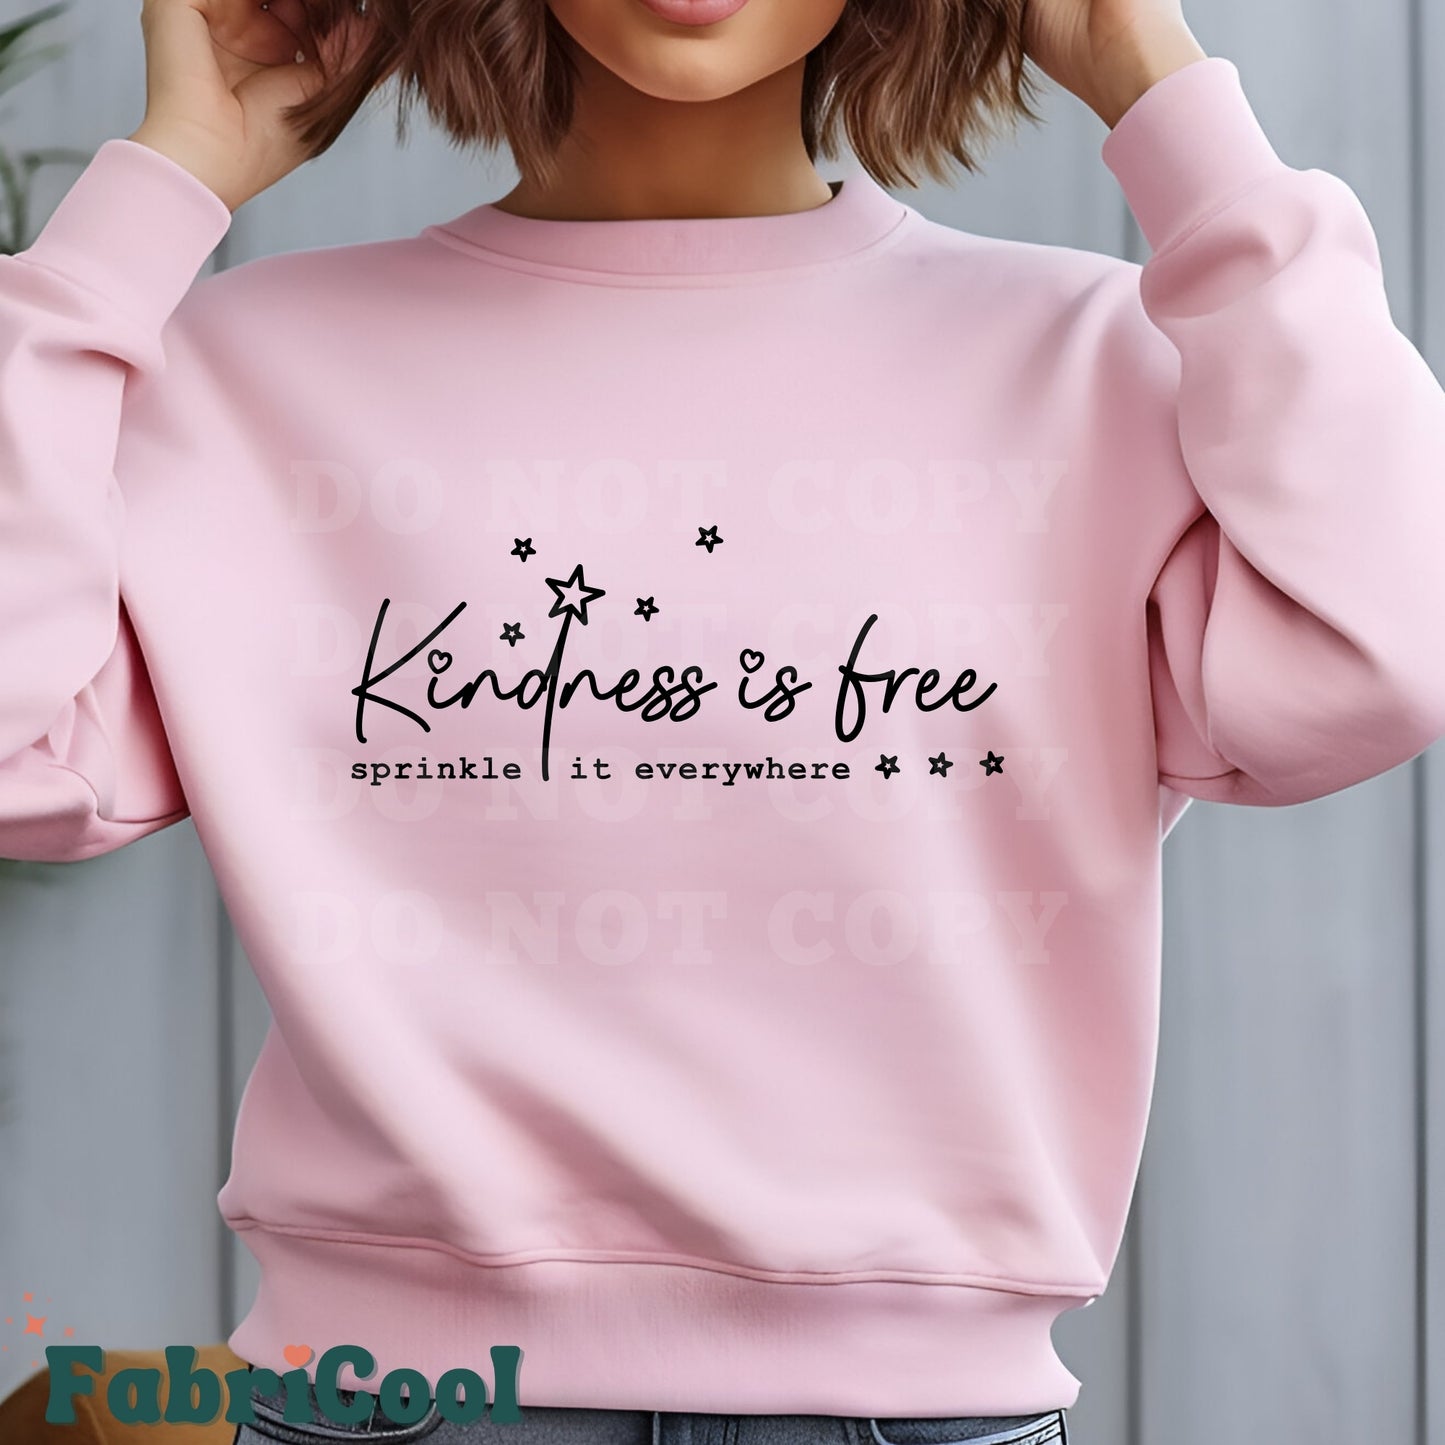 Kindness is free- Black Screen Print Transfer